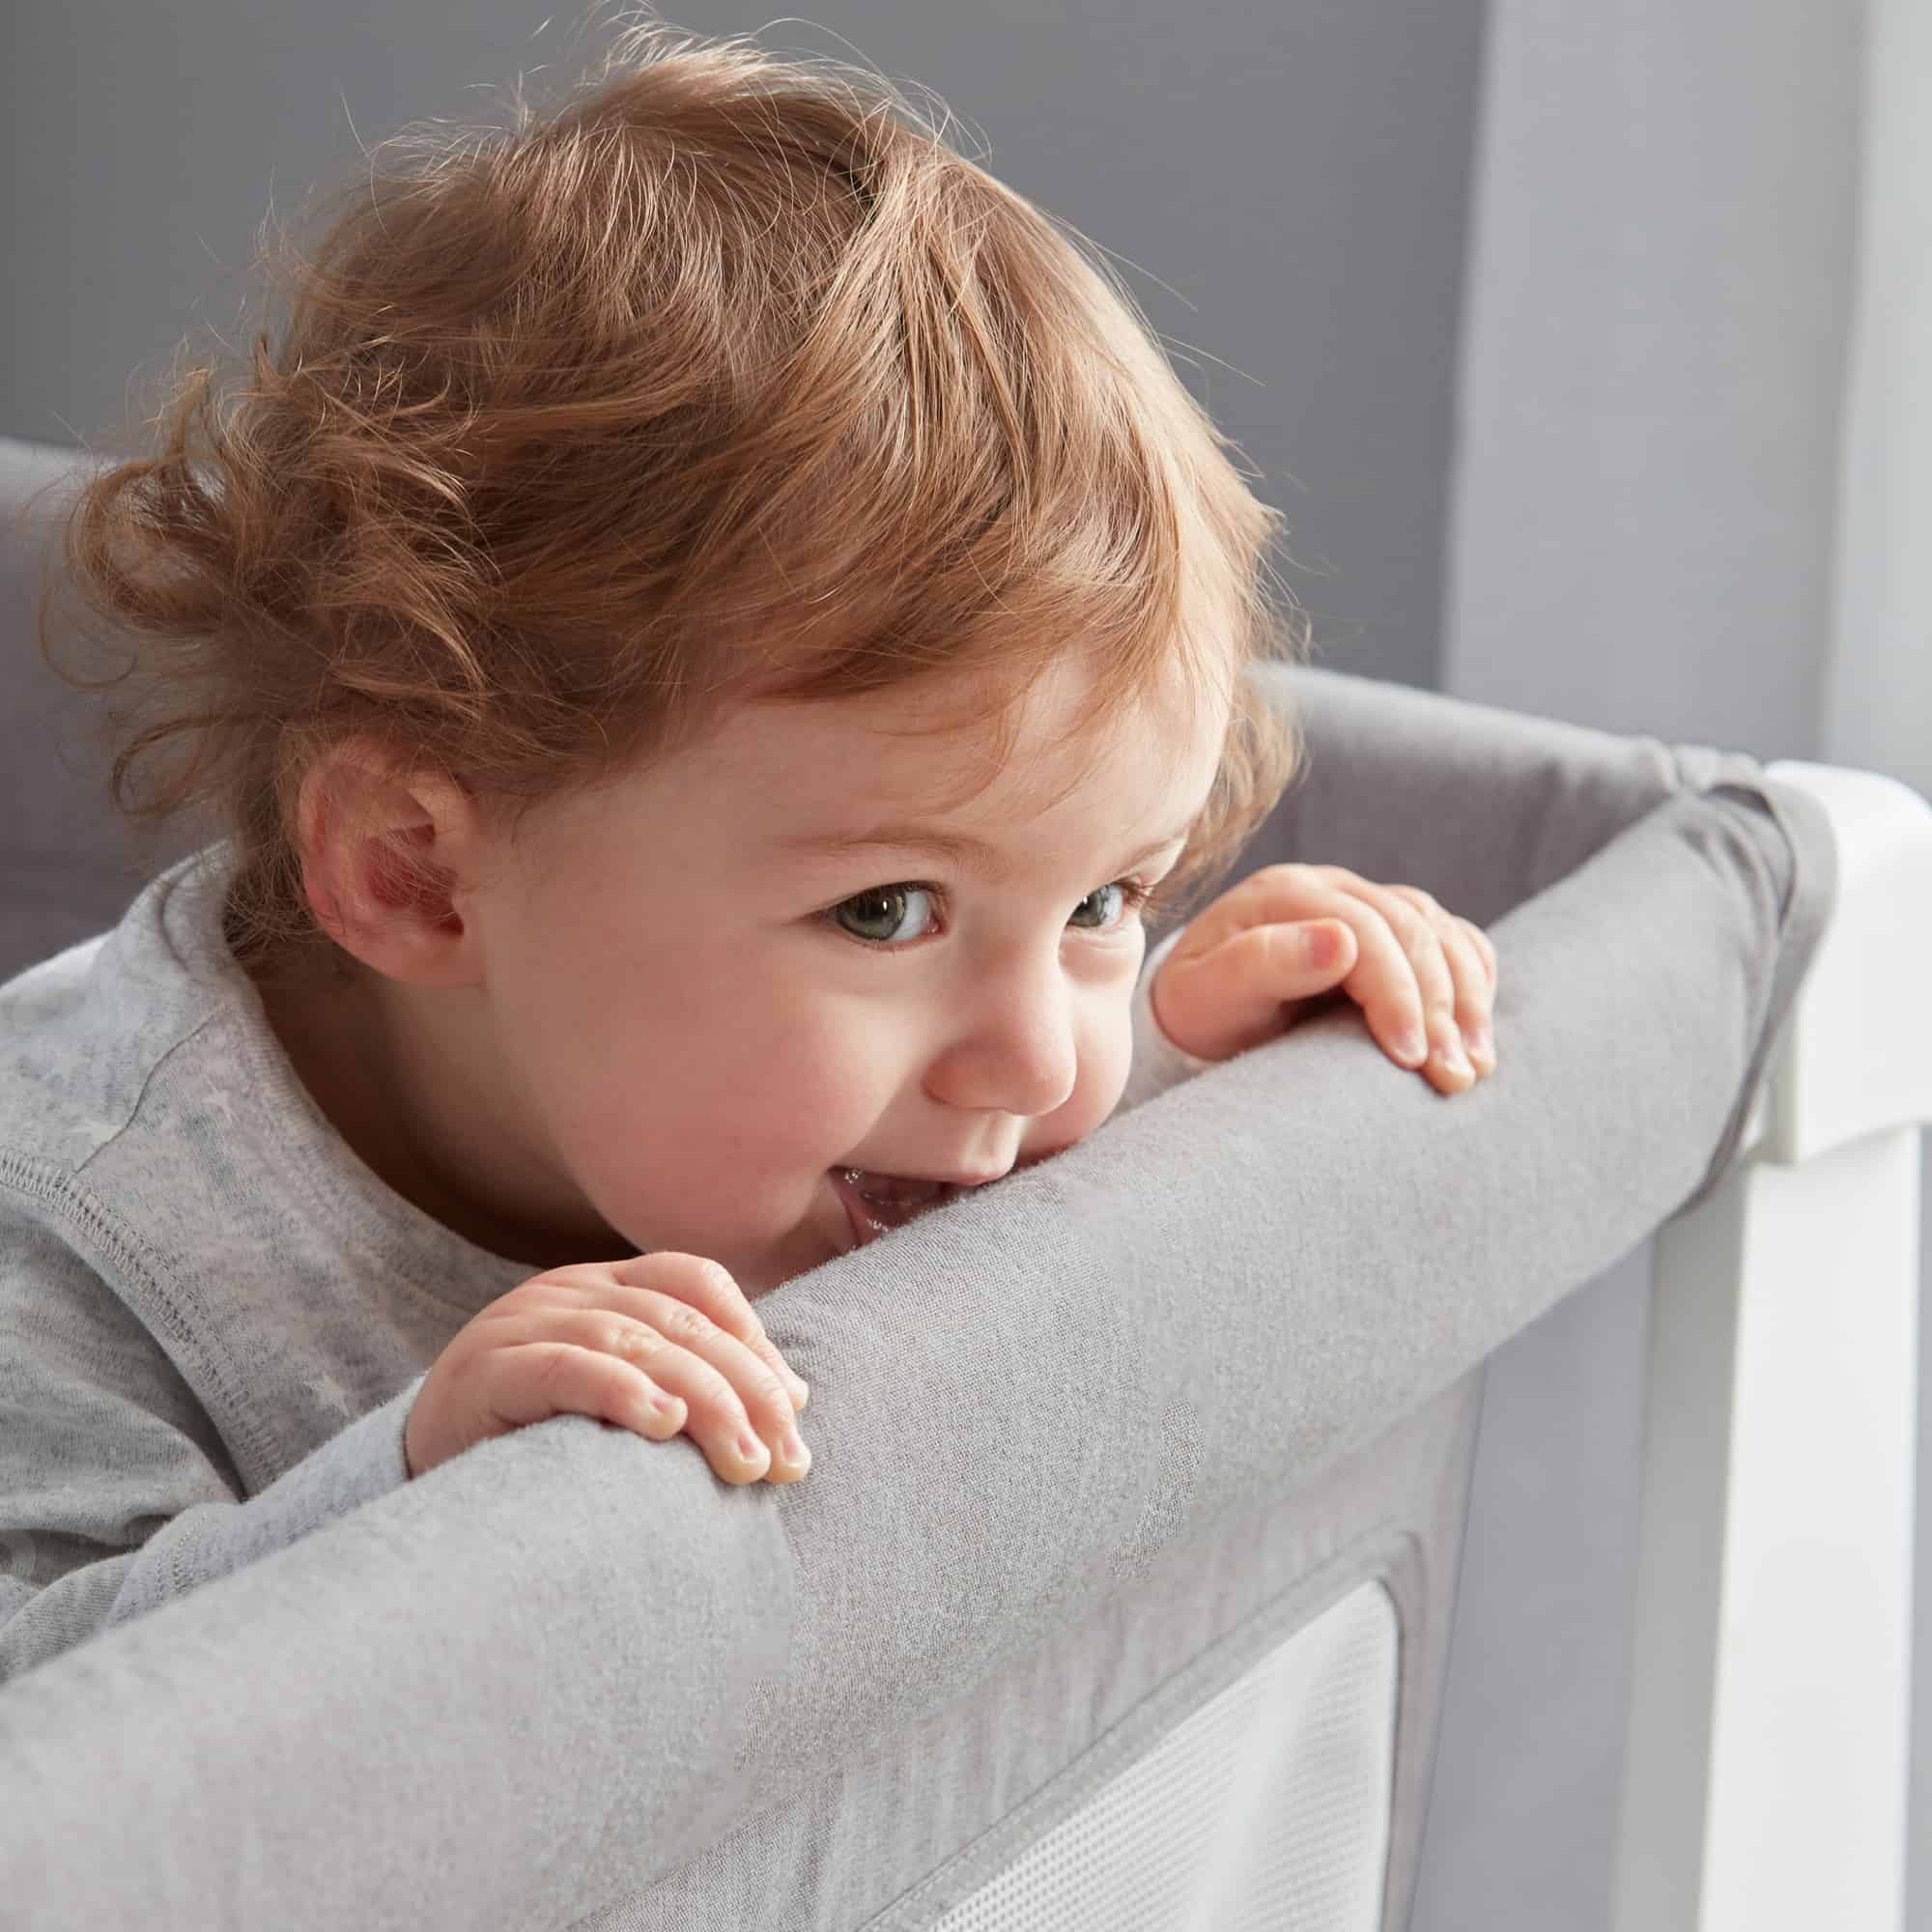 Toddler biting on crib sides